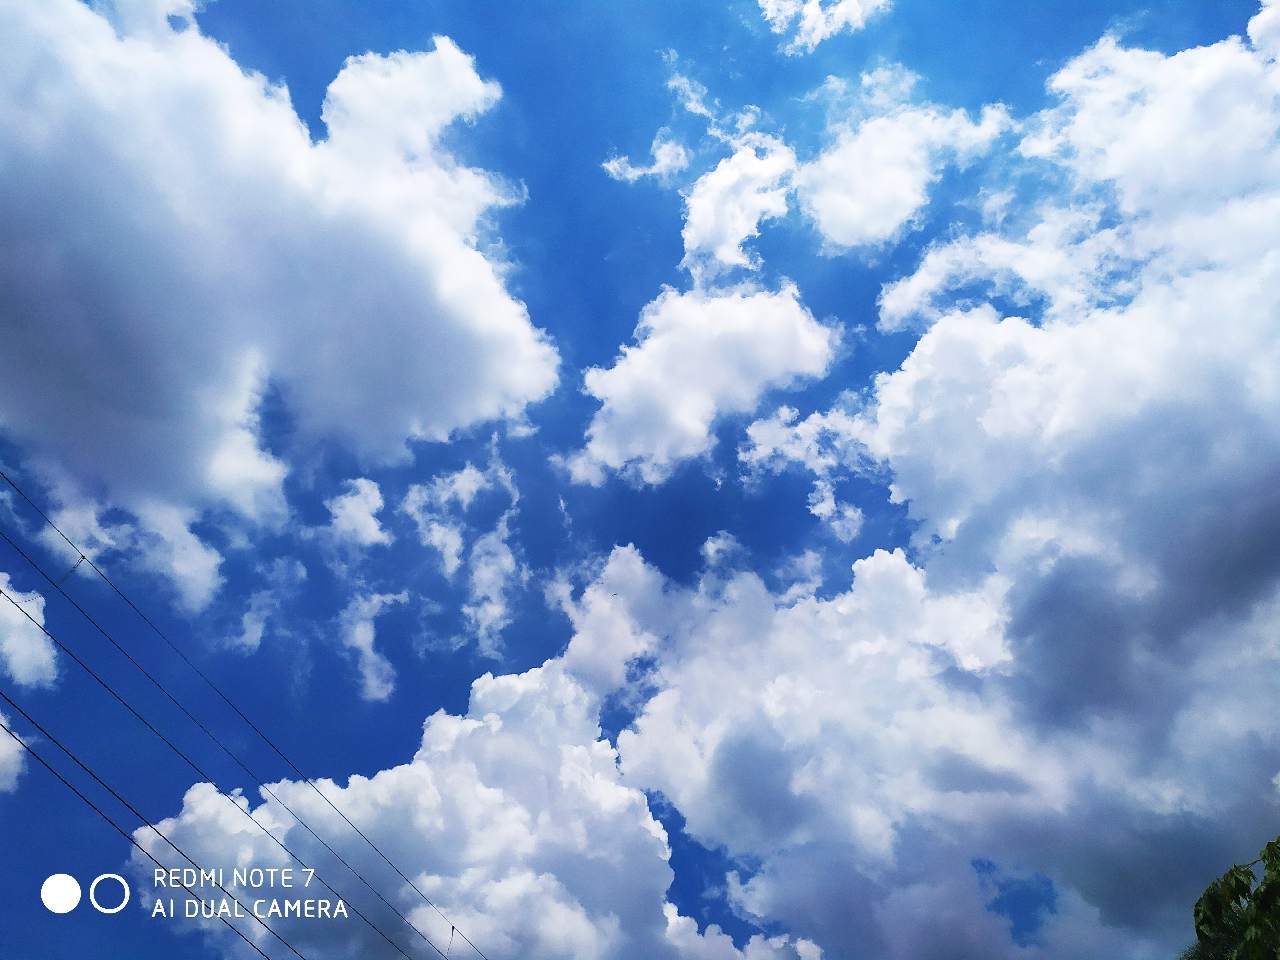 Hình ảnh của nhiếp ảnh trời xanh mây trắng luôn làm cho trái tim của bạn rung động. Bầu trời xanh sáng tỏ bao phủ lên những đám mây trắng bồng bềnh, mang lại cảm giác bình yên và thư giãn cho tâm hồn bạn.